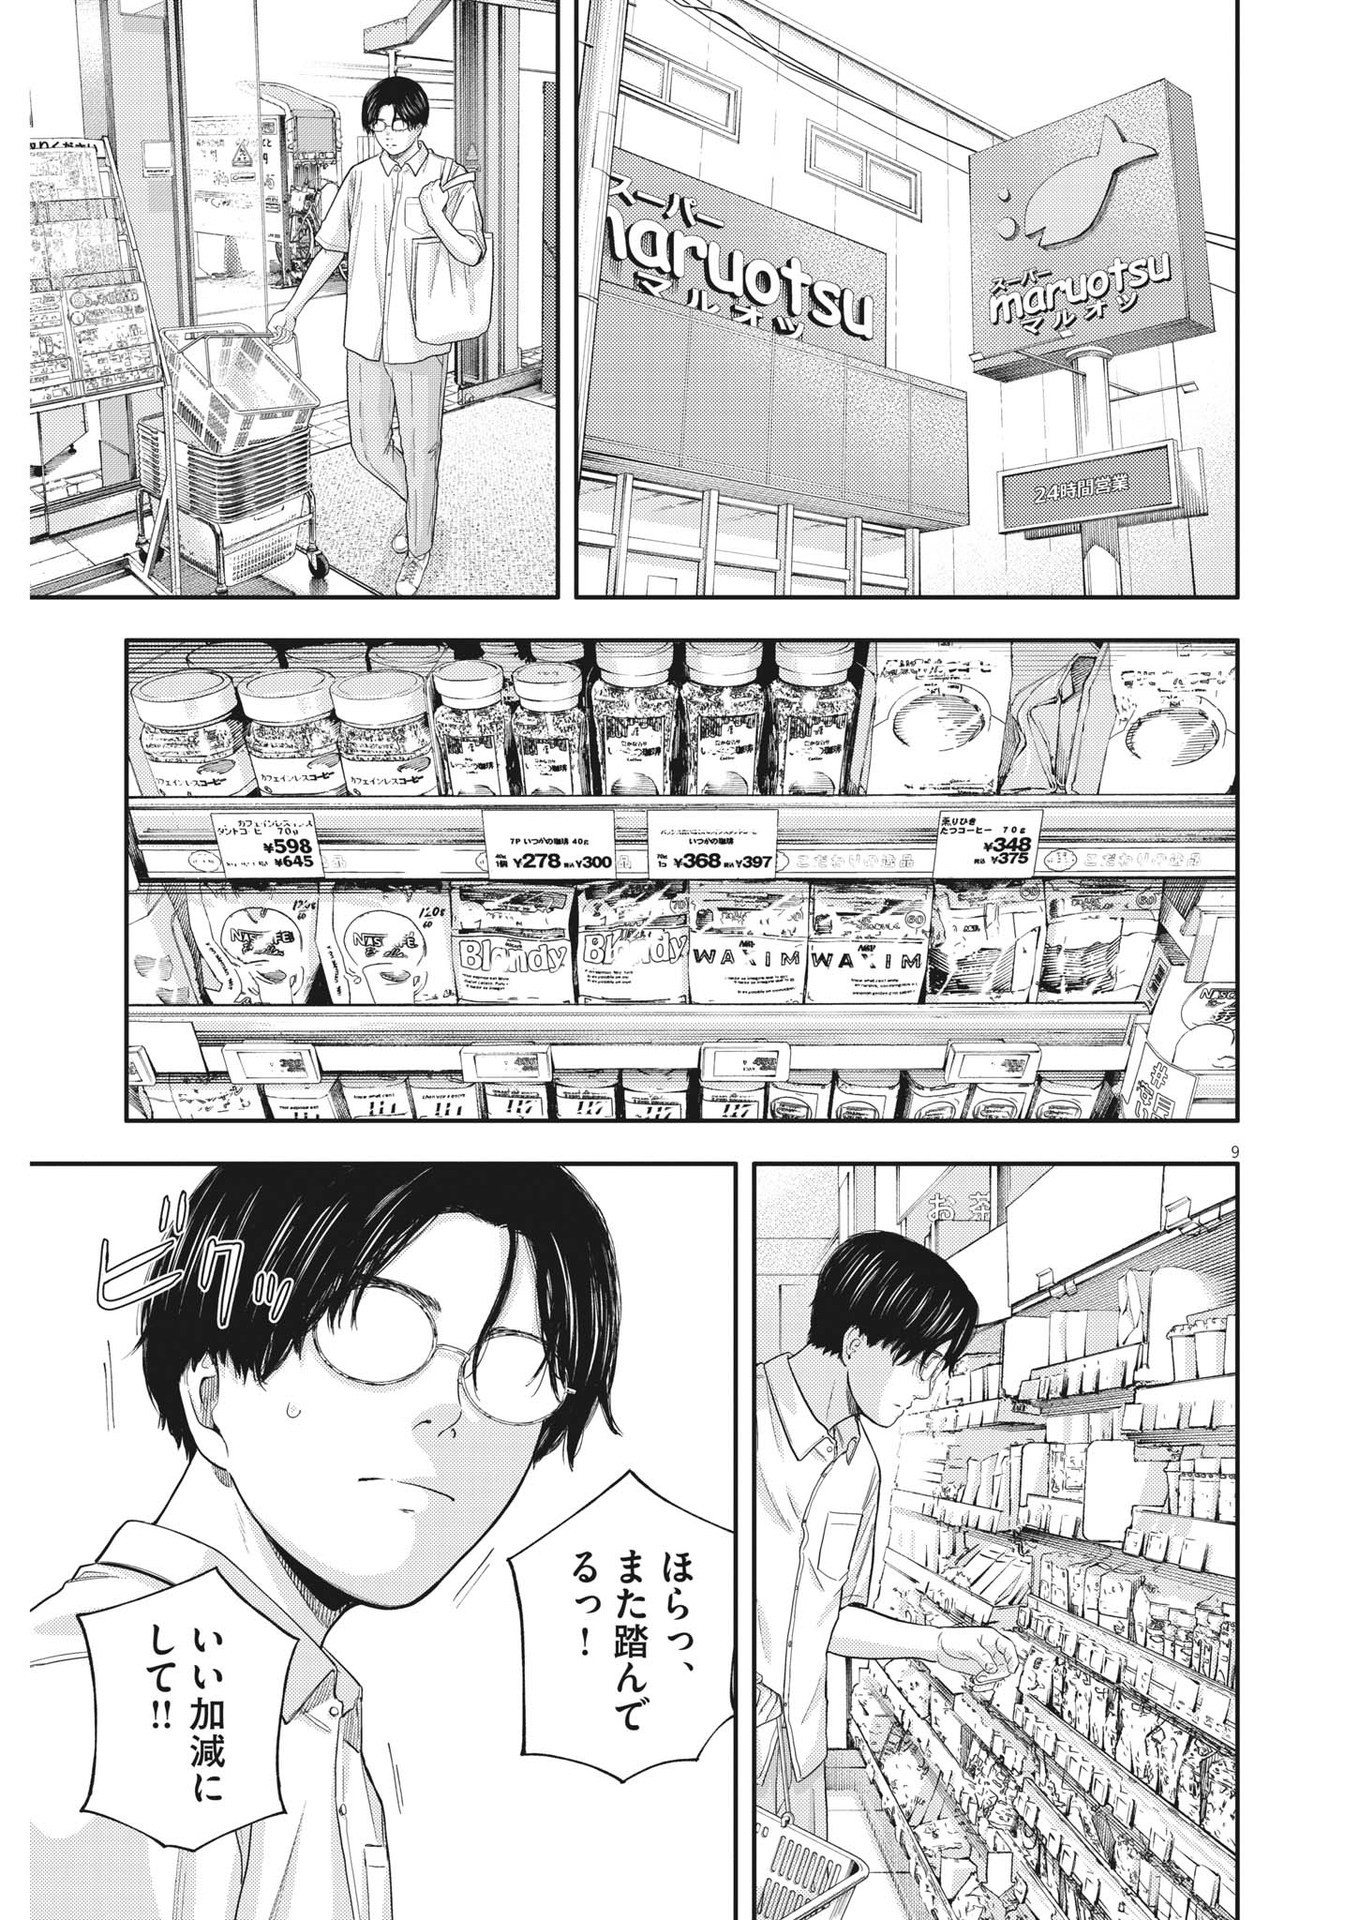 Yumenashi-sensei no Shinroshidou - Chapter 13 - Page 9